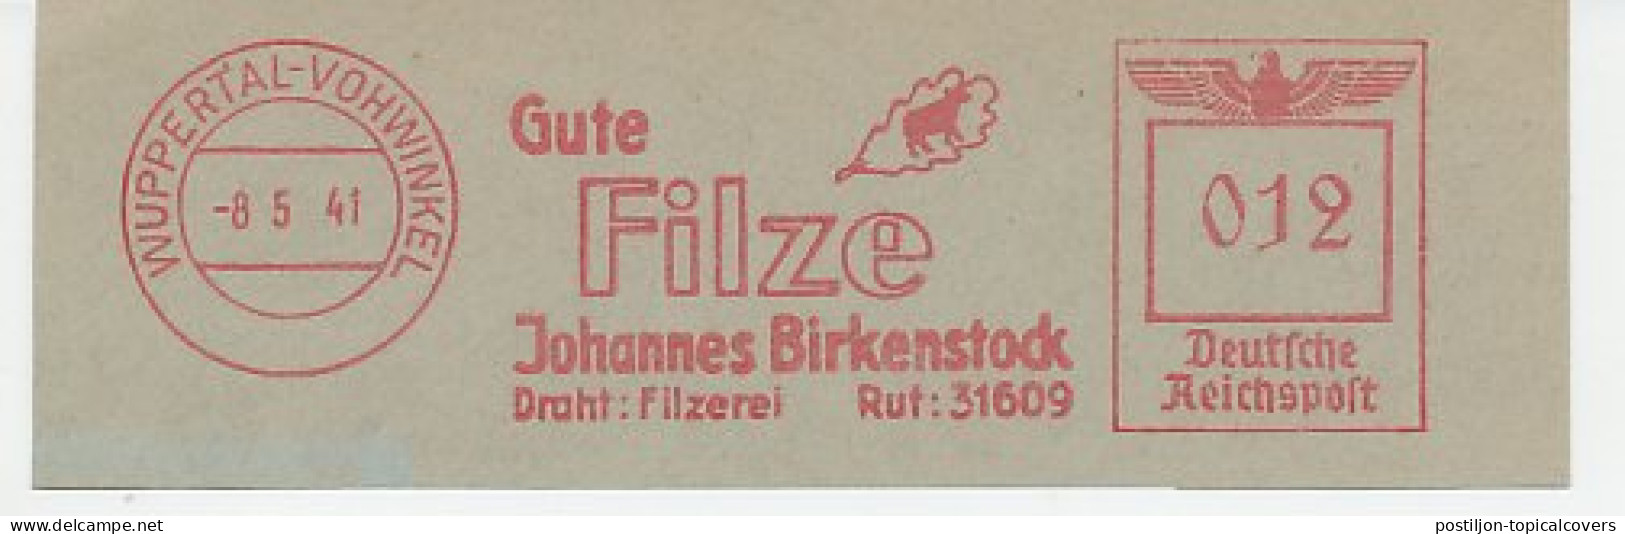 Meter Cut Germany / Deutsche Reichspost 1941 Felt - Textile